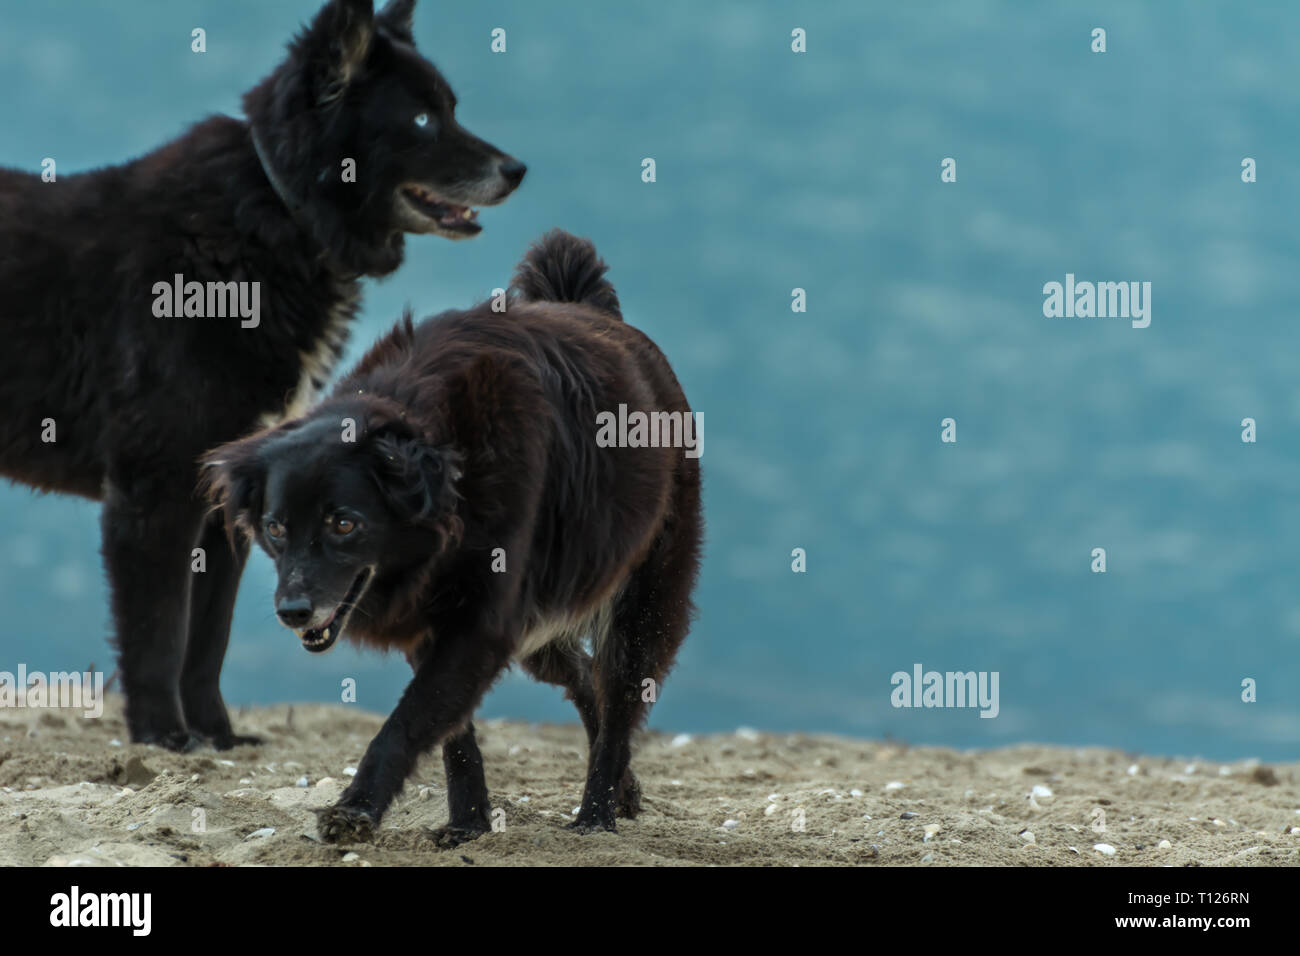 2018, novembre - Paraty, Brasile. Cane nero simile a quella di un lupo o un orso, in piedi sulla spiaggia. Foto Stock